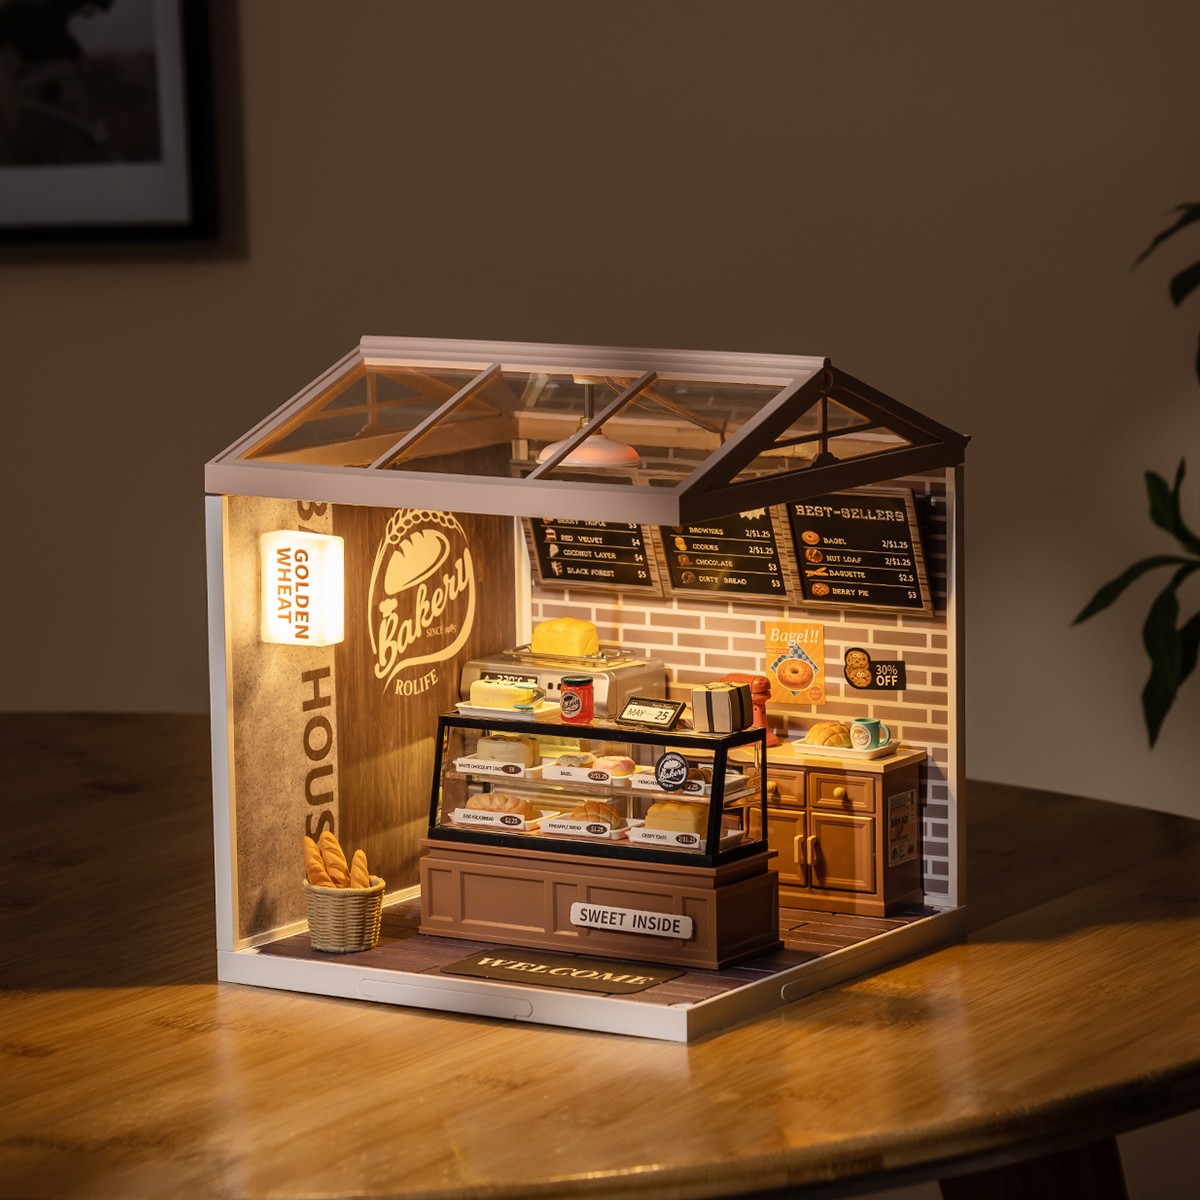 Rolife Super Creator Daily Inspiration Cafe Plastic DIY Miniature HouseXmas  Gift